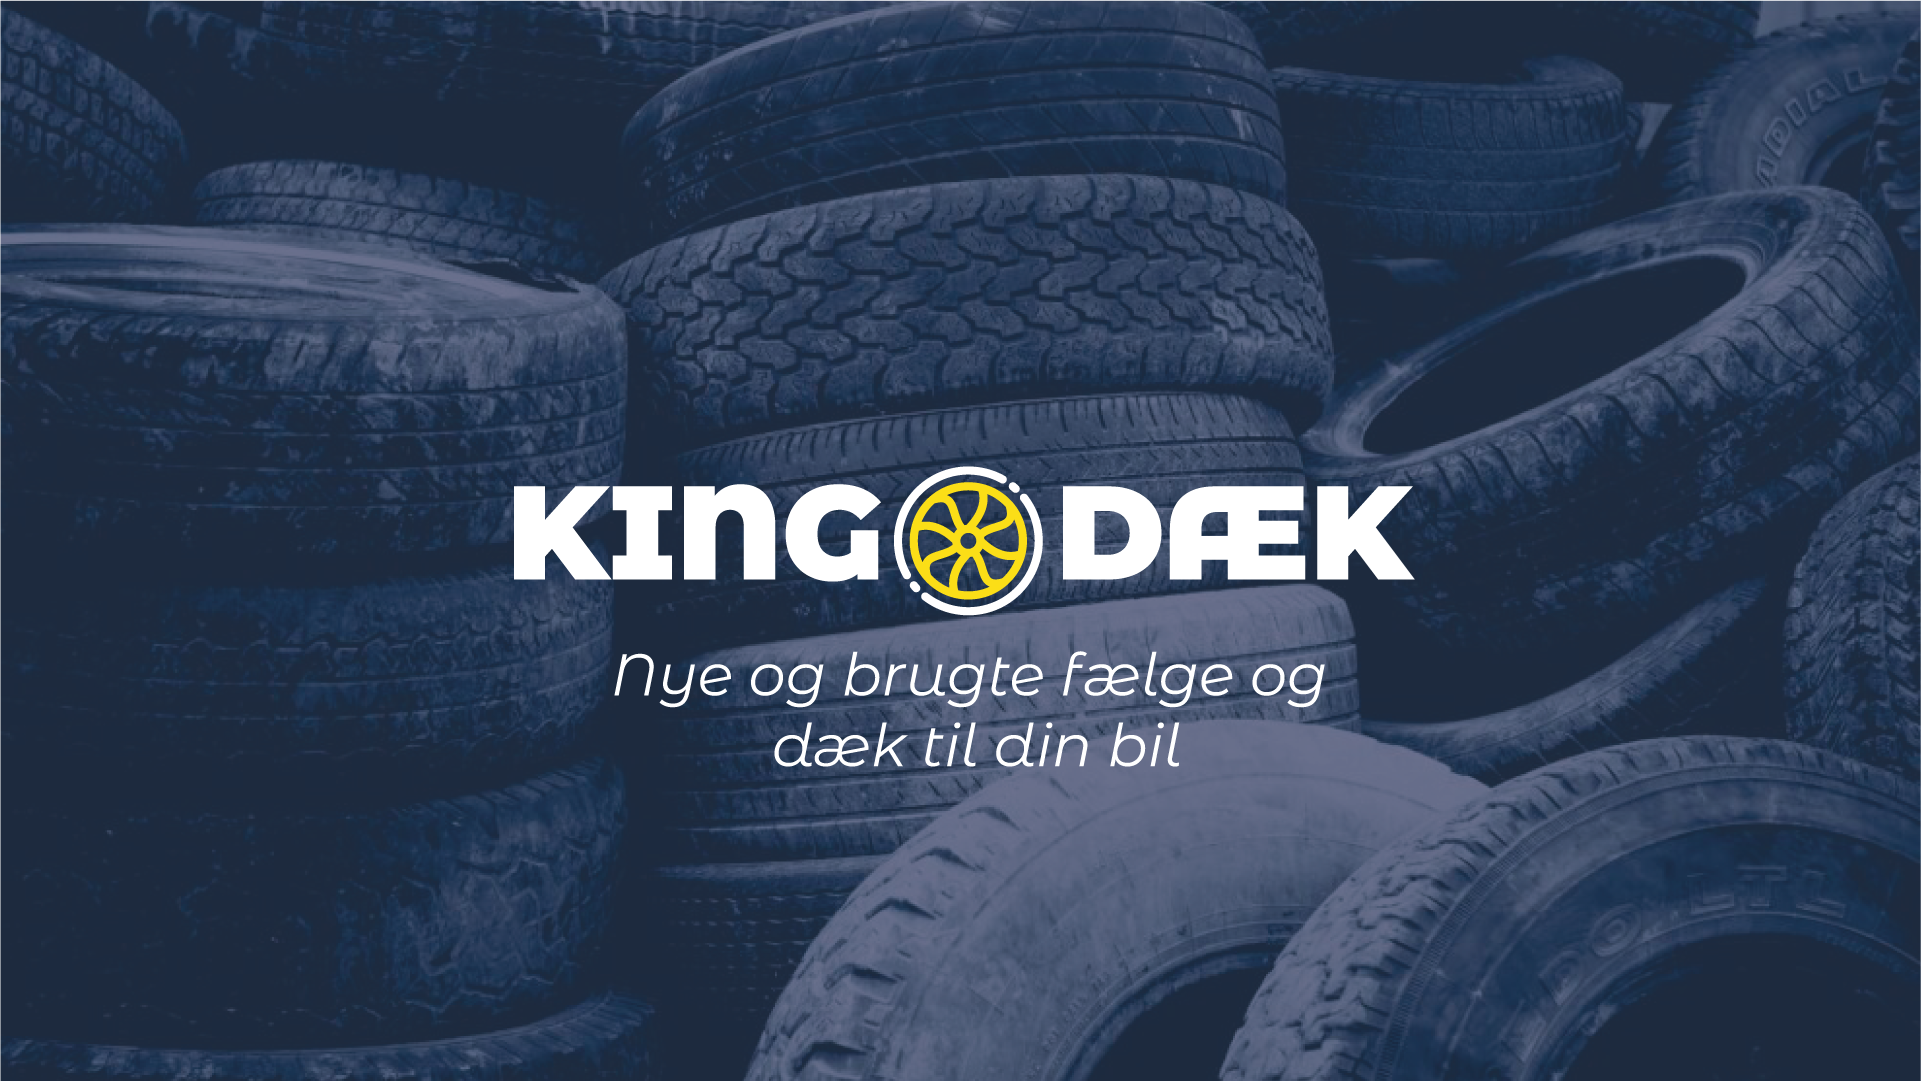 King Dæk - Nye og brugte fælge og dæk til din bil